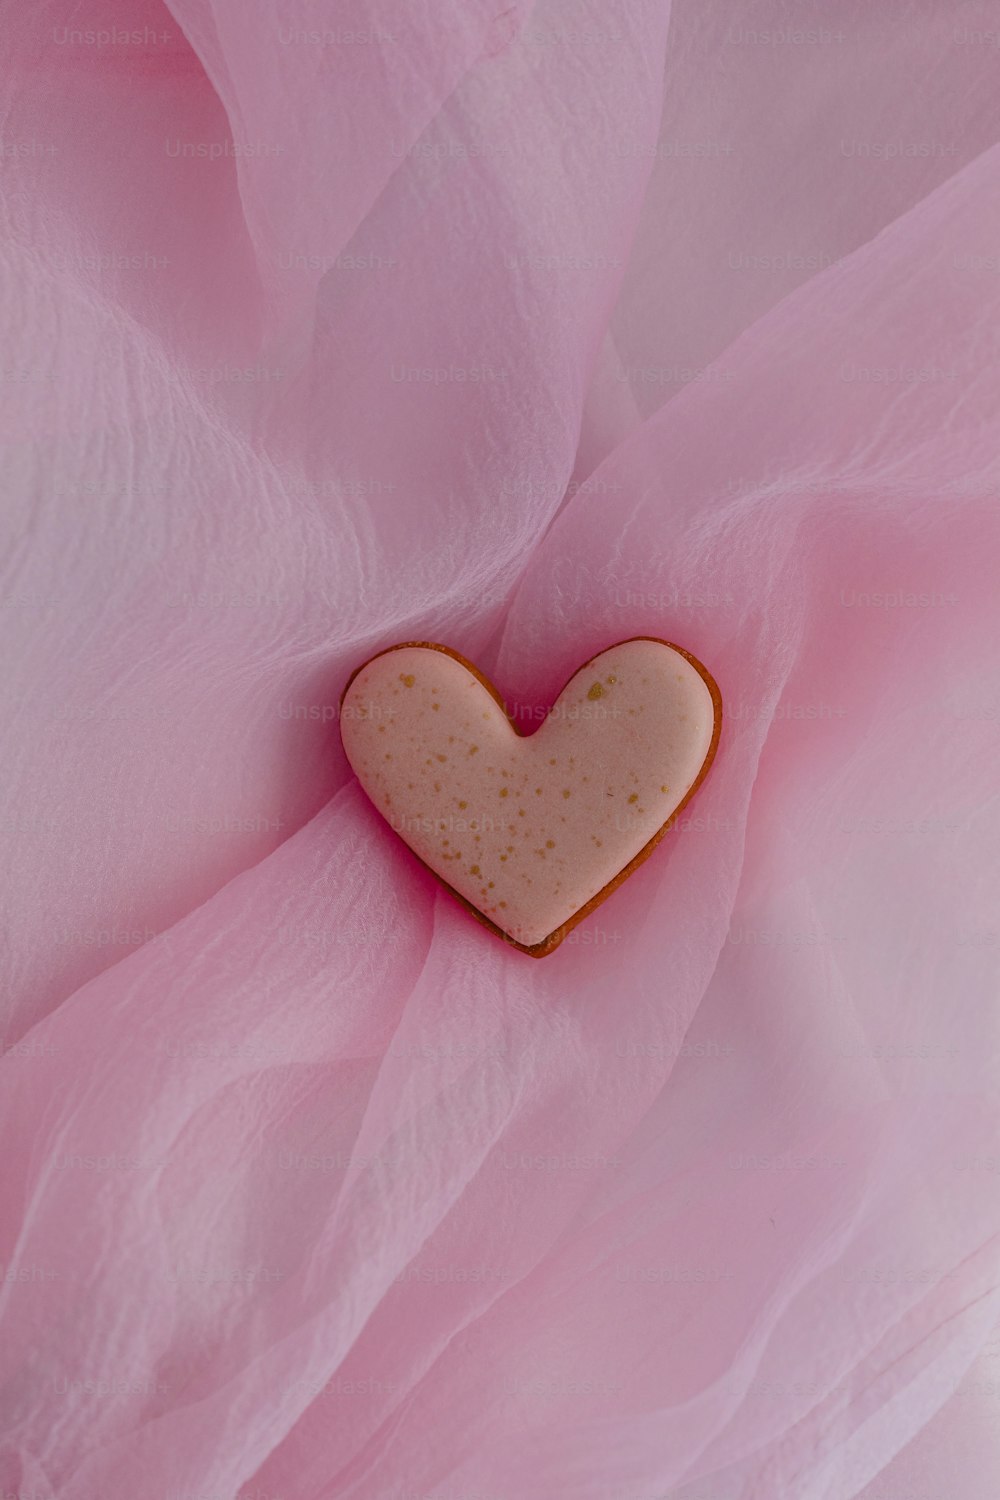 Un biscuit en forme de cœur posé sur un tissu rose